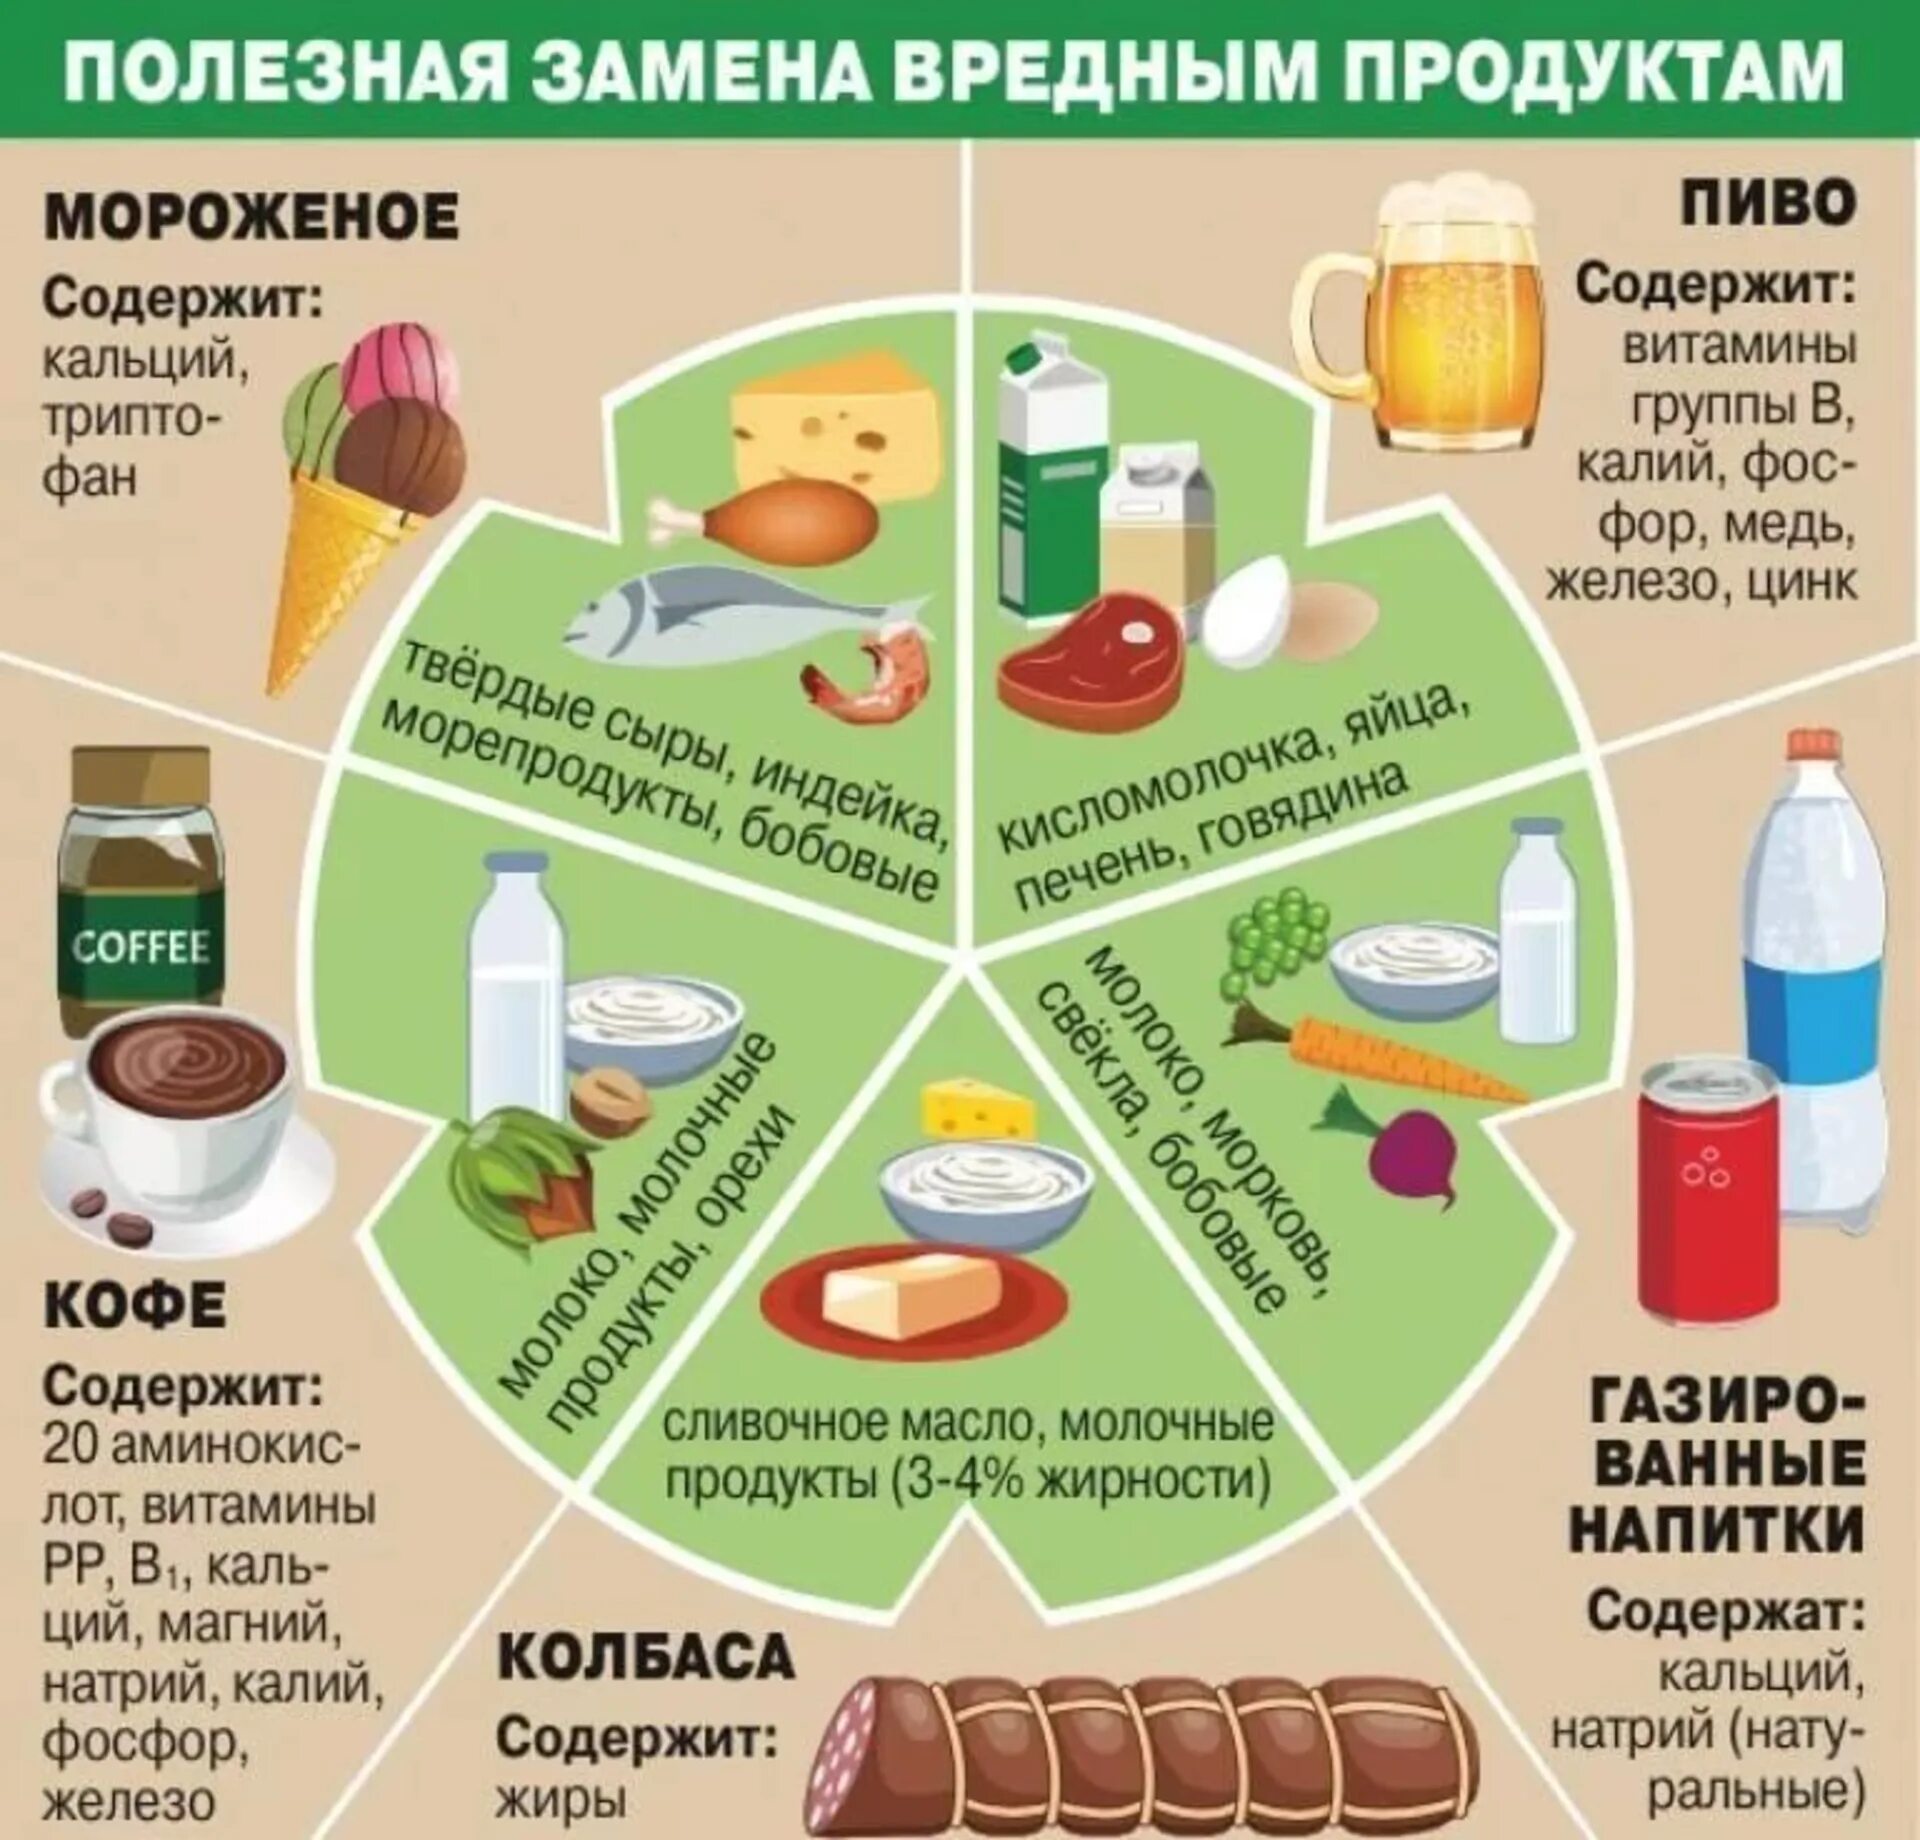 Таблица полезных продуктов питания. Таблица правильного питания. Таблица полезных и вредных продуктов питания. Заменяем вредные продукты на полезные.